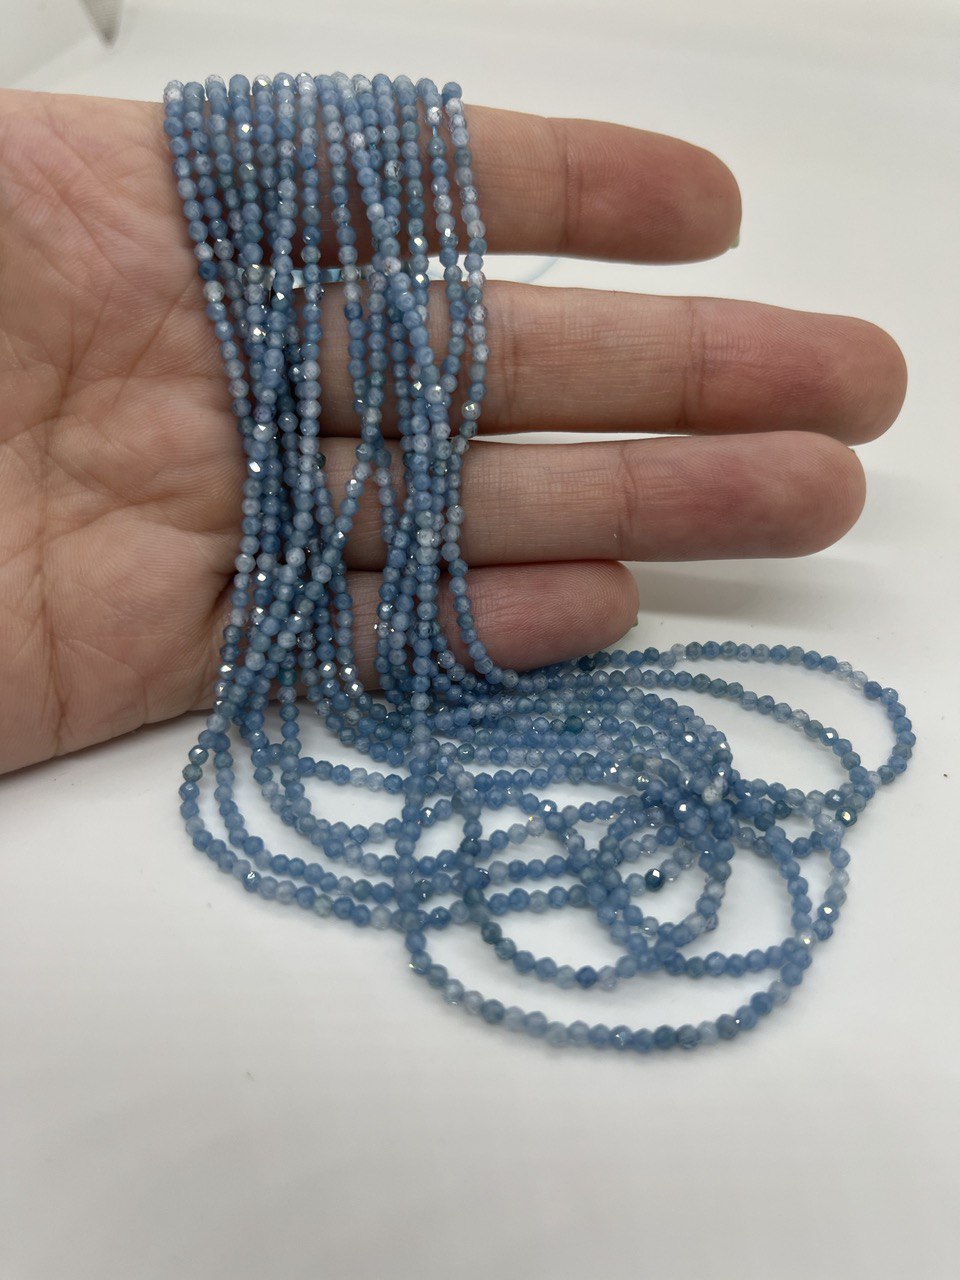 Бусины Циркон натуральный ювелирной огранки размер 2мм цвет голубой